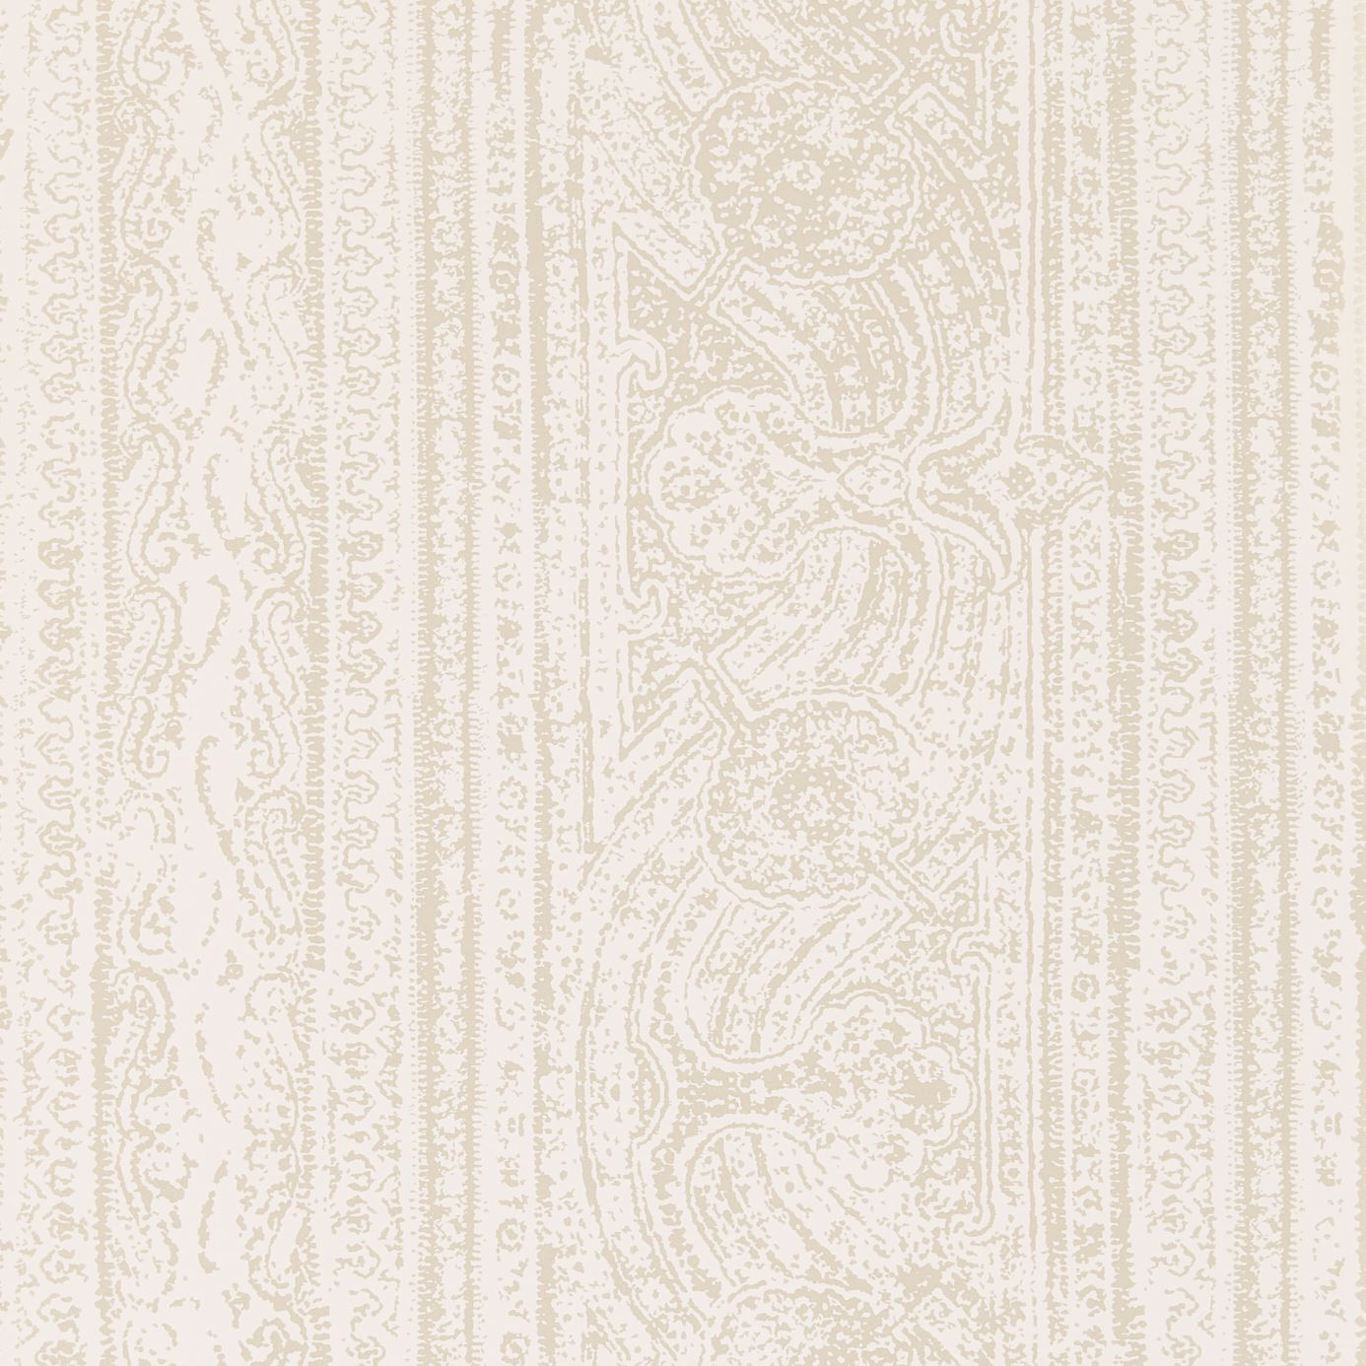 Odisha Ivory/Shell Wallpaper by HAR